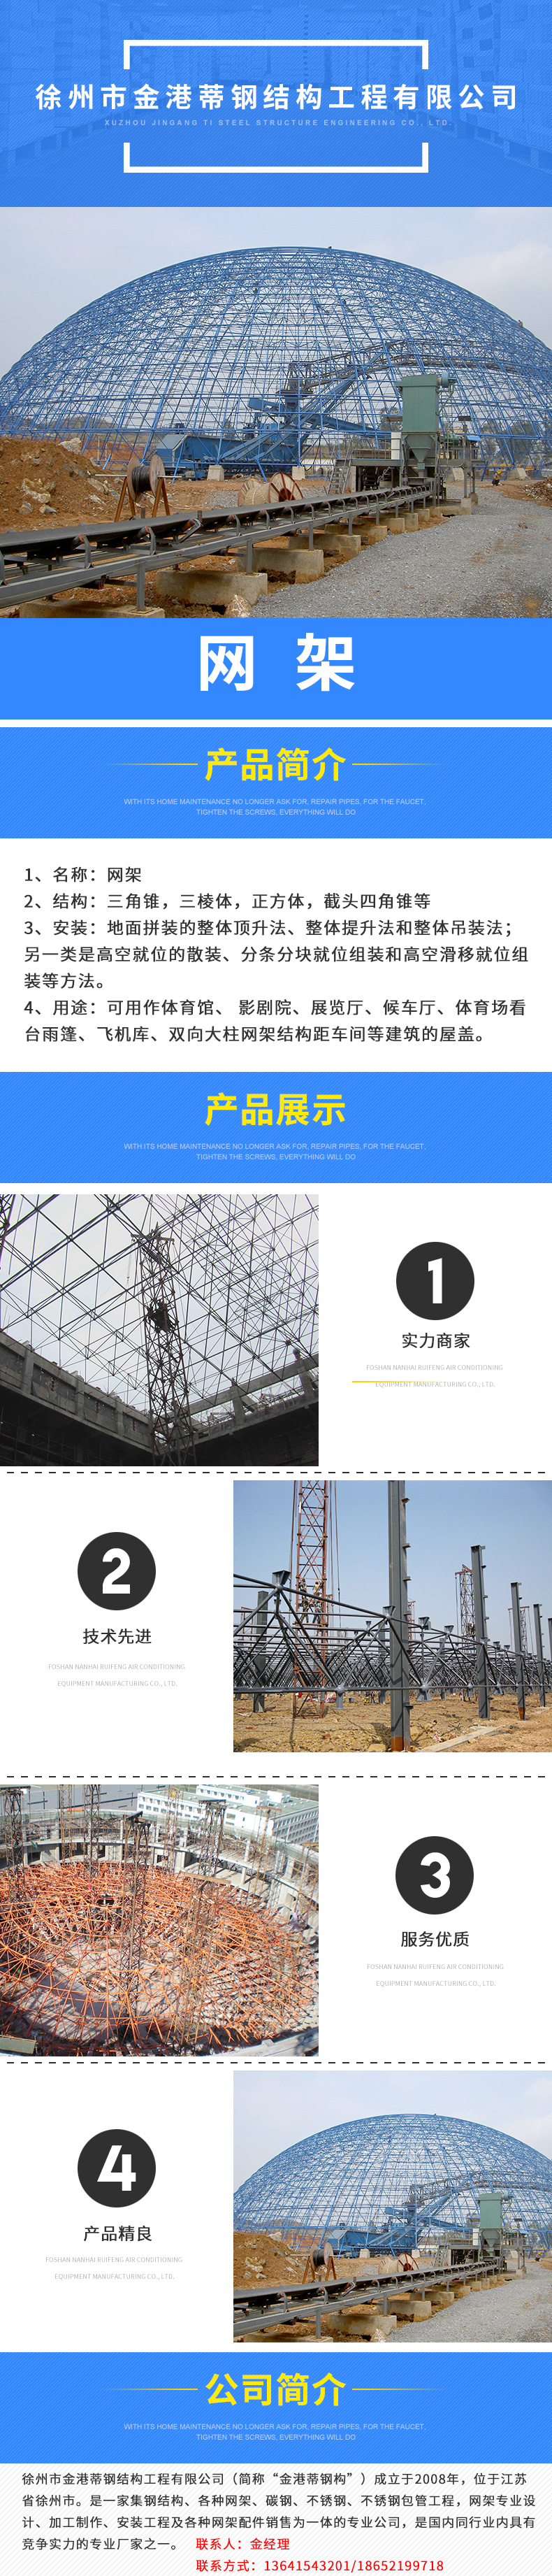 不锈钢网架供应不锈钢网架 江苏不锈钢网架公司 徐州不锈钢网架报价 13641543201